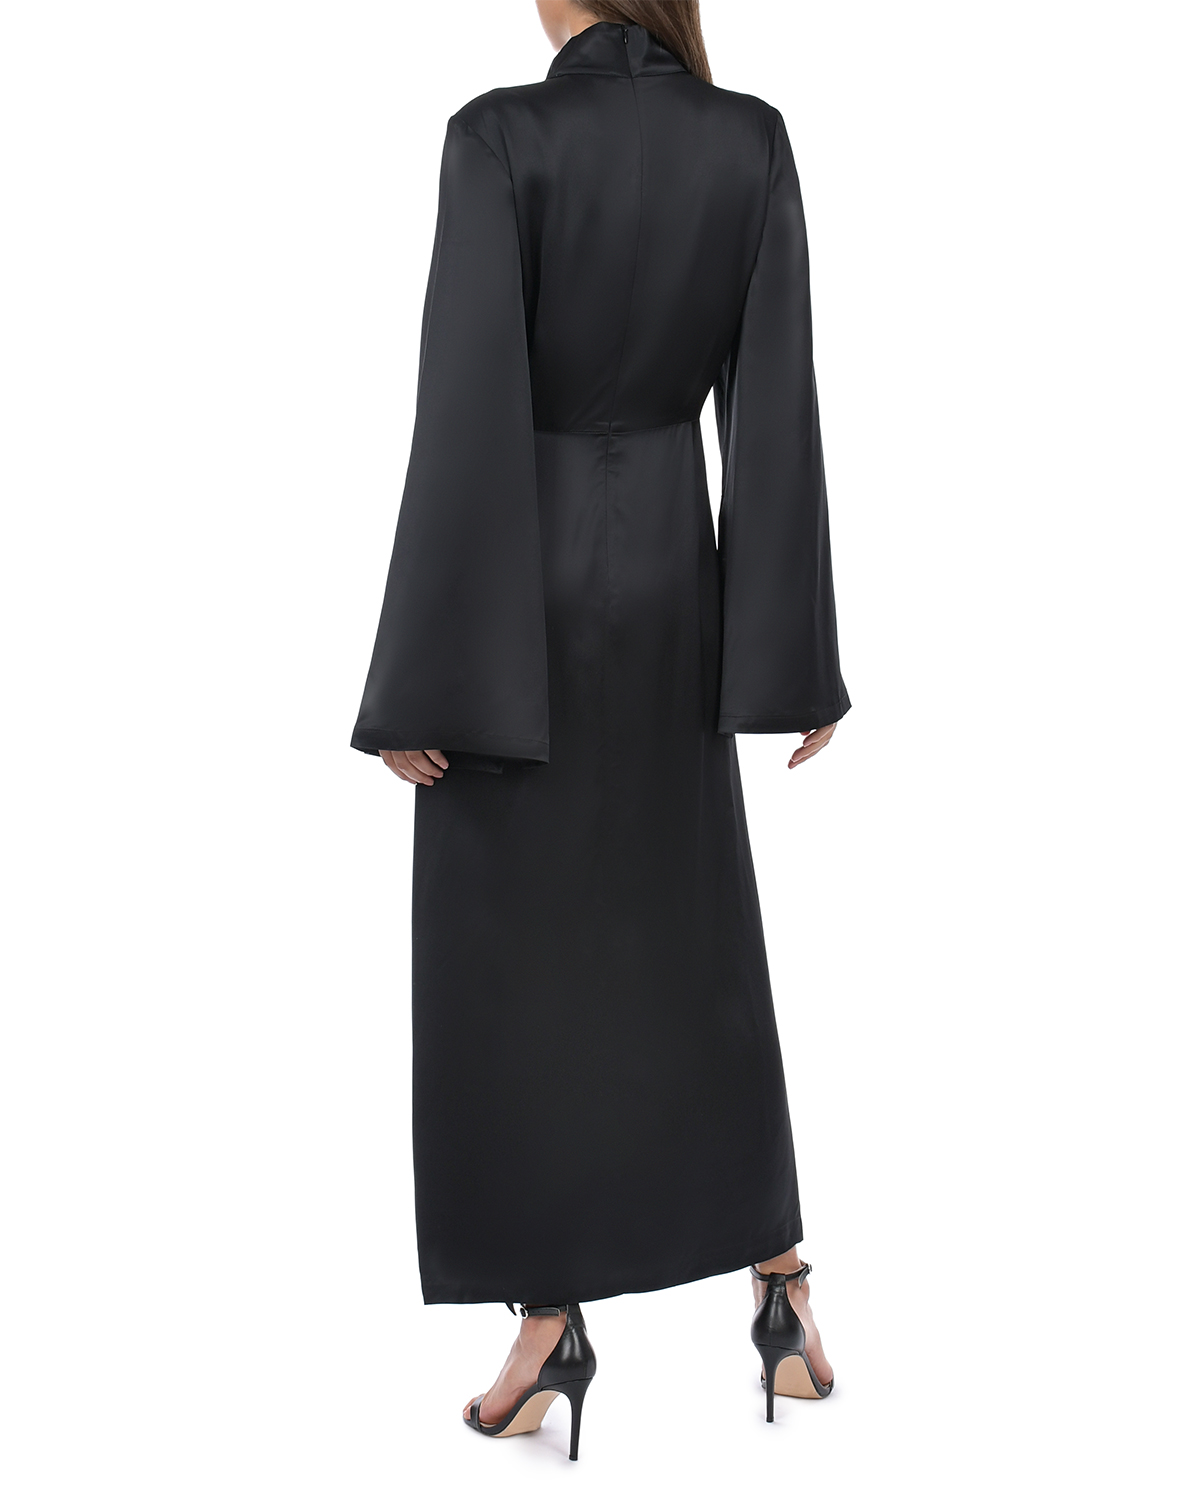 Черное платье с длинными расклешенными рукавами ROHE, размер 44, цвет черный - фото 4